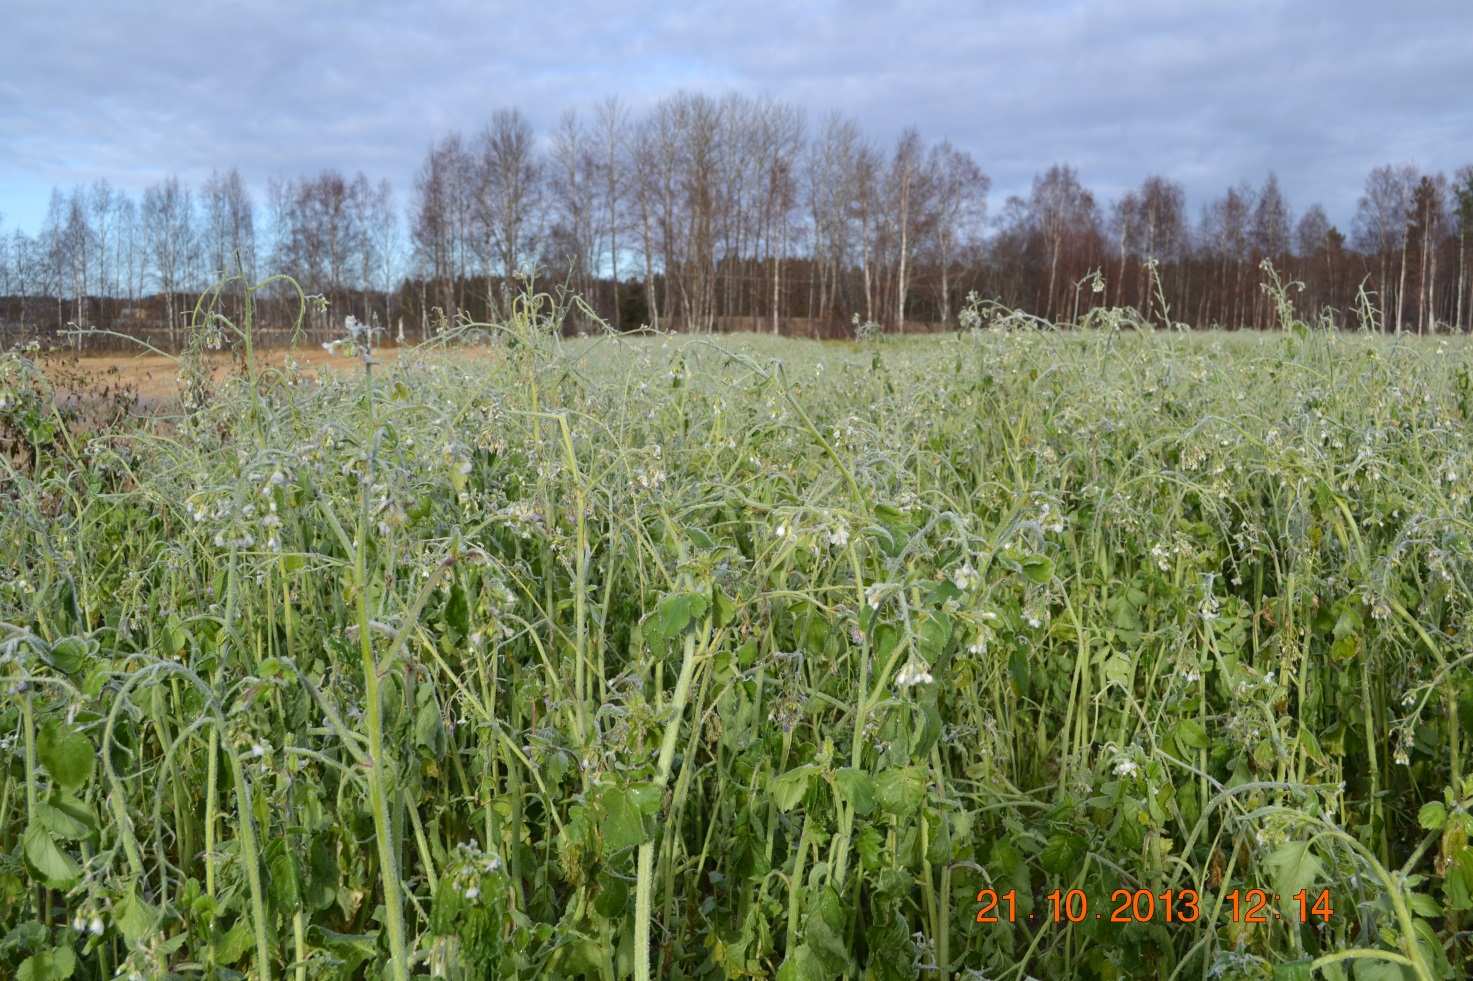 Lisätietoja Ympäristökompassi hankkeesta: ProAgria Etelä-Suomi ry:n kerääjäkasvikoe on osa vuosina 2012 2014 toteutettavaa Pirkanmaan YmpäristöKompassi - hanketta, joka